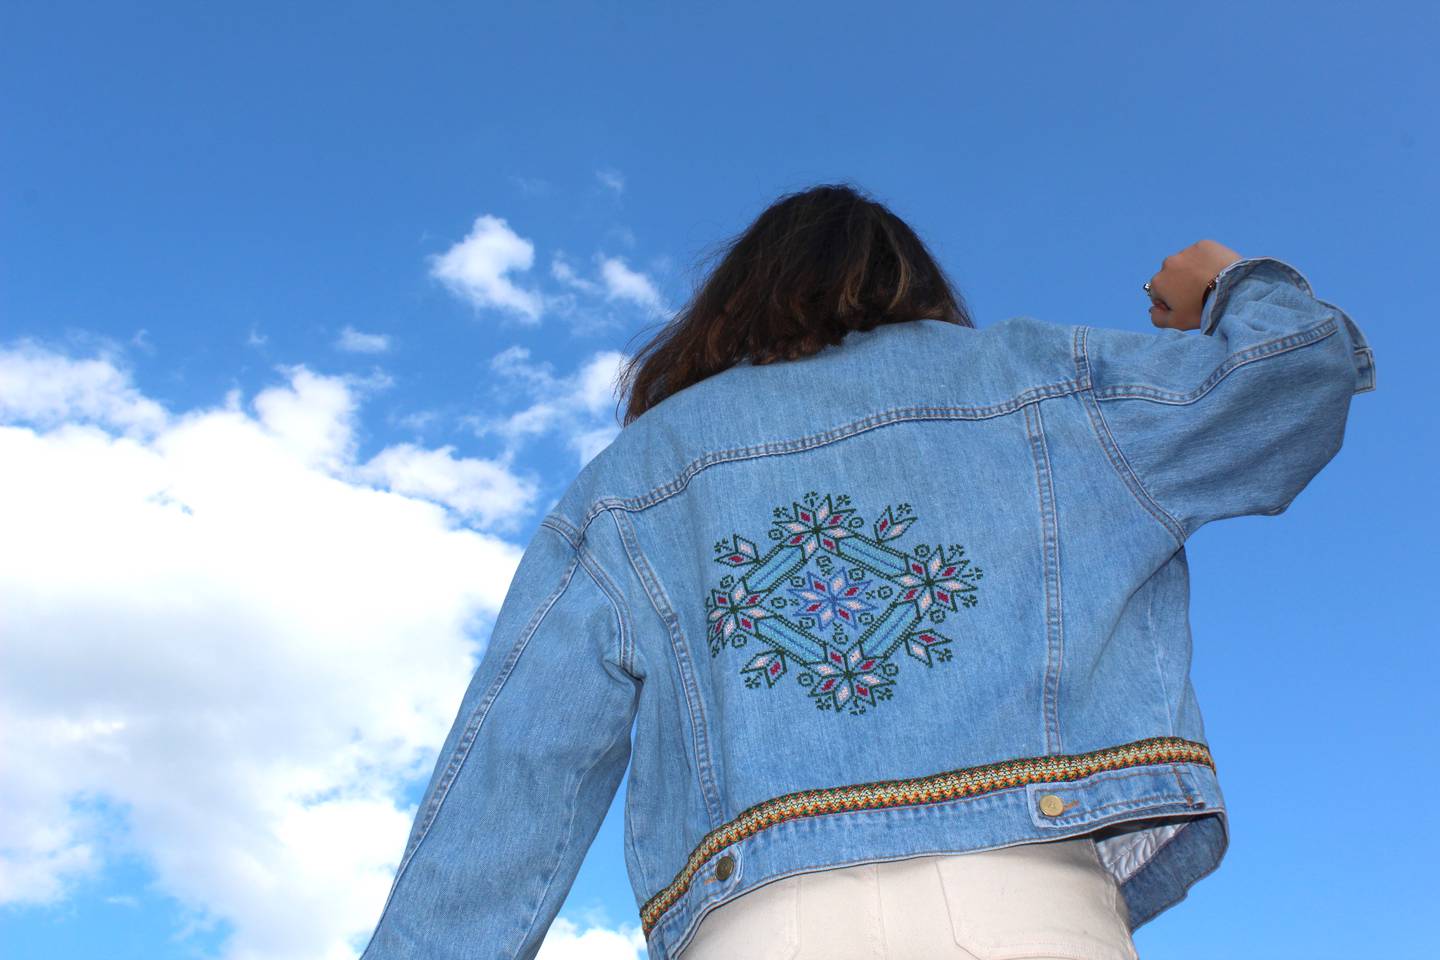 The jackets feature Palestinian embroidery and motifs. Photo: Salma Shawa